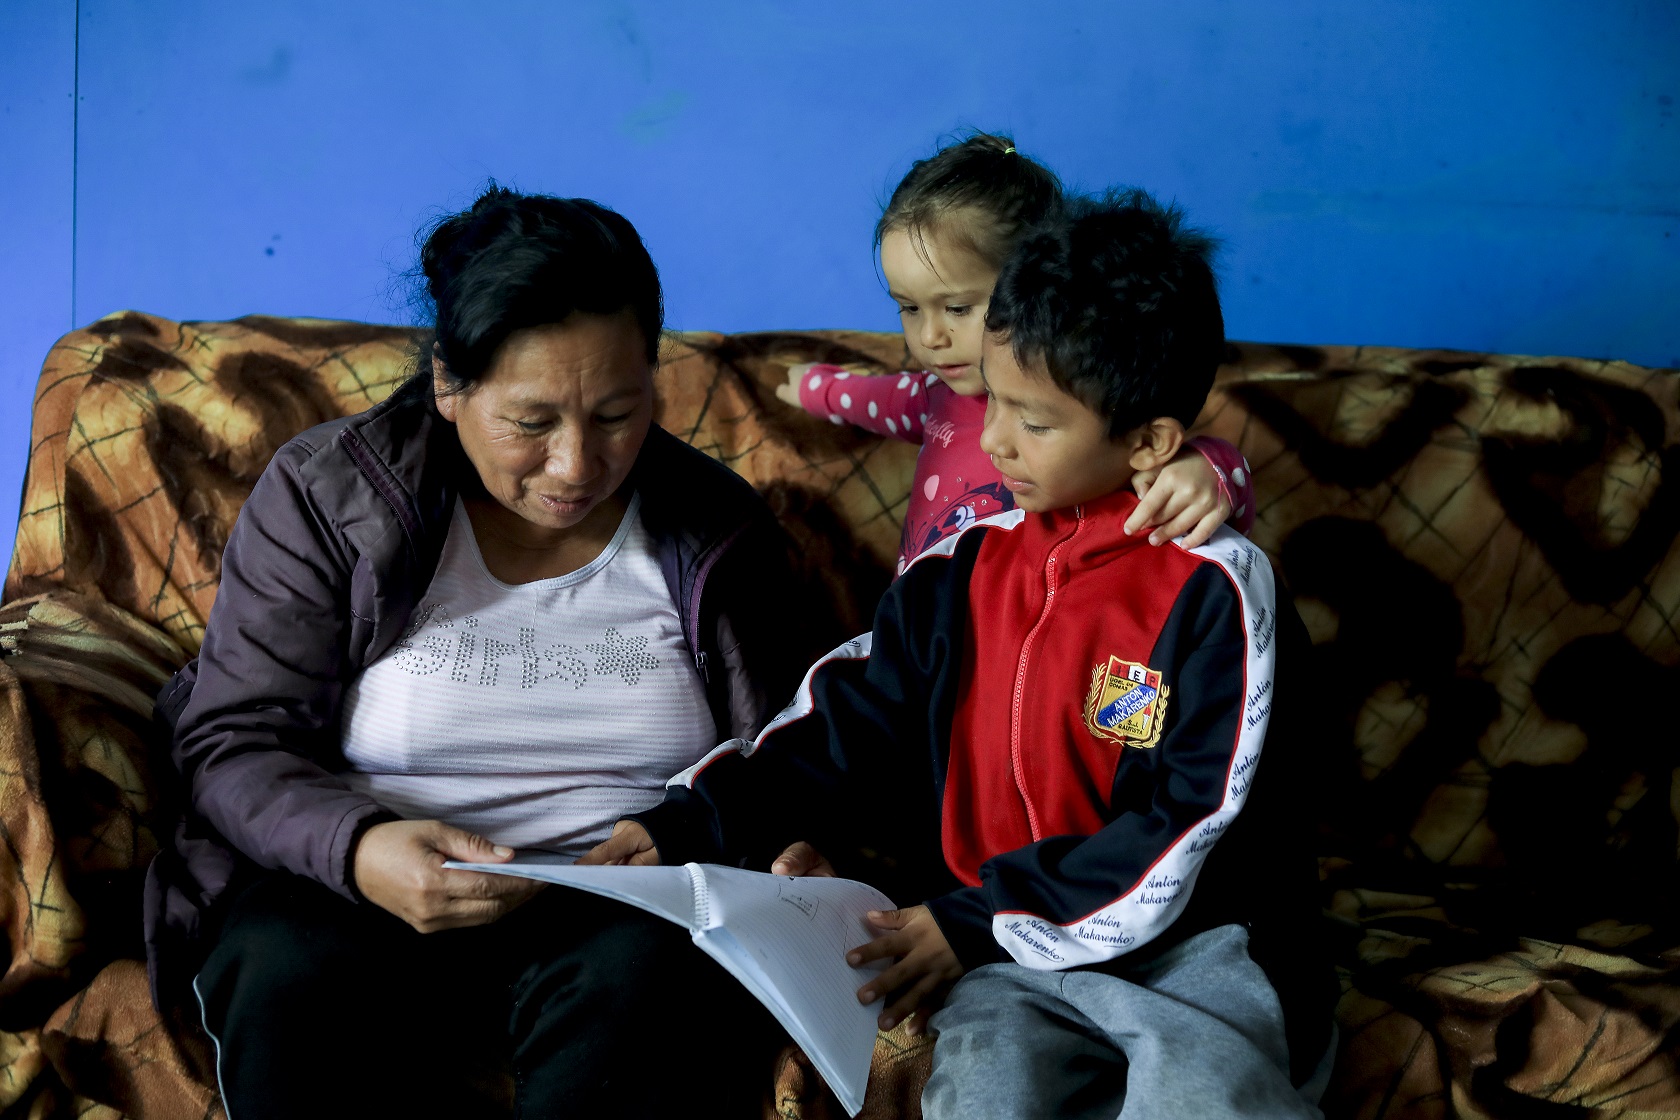 I Peru anser én av tre foreldre vold som en nødvendig del av oppdragelsen. Sju av ti barn blir utsatt for eller er vitne til vold i hjemmet, og familievold er en av de viktigste årsakene til at barn må flytte fra familien sin. Foto: Monica Strømdahl